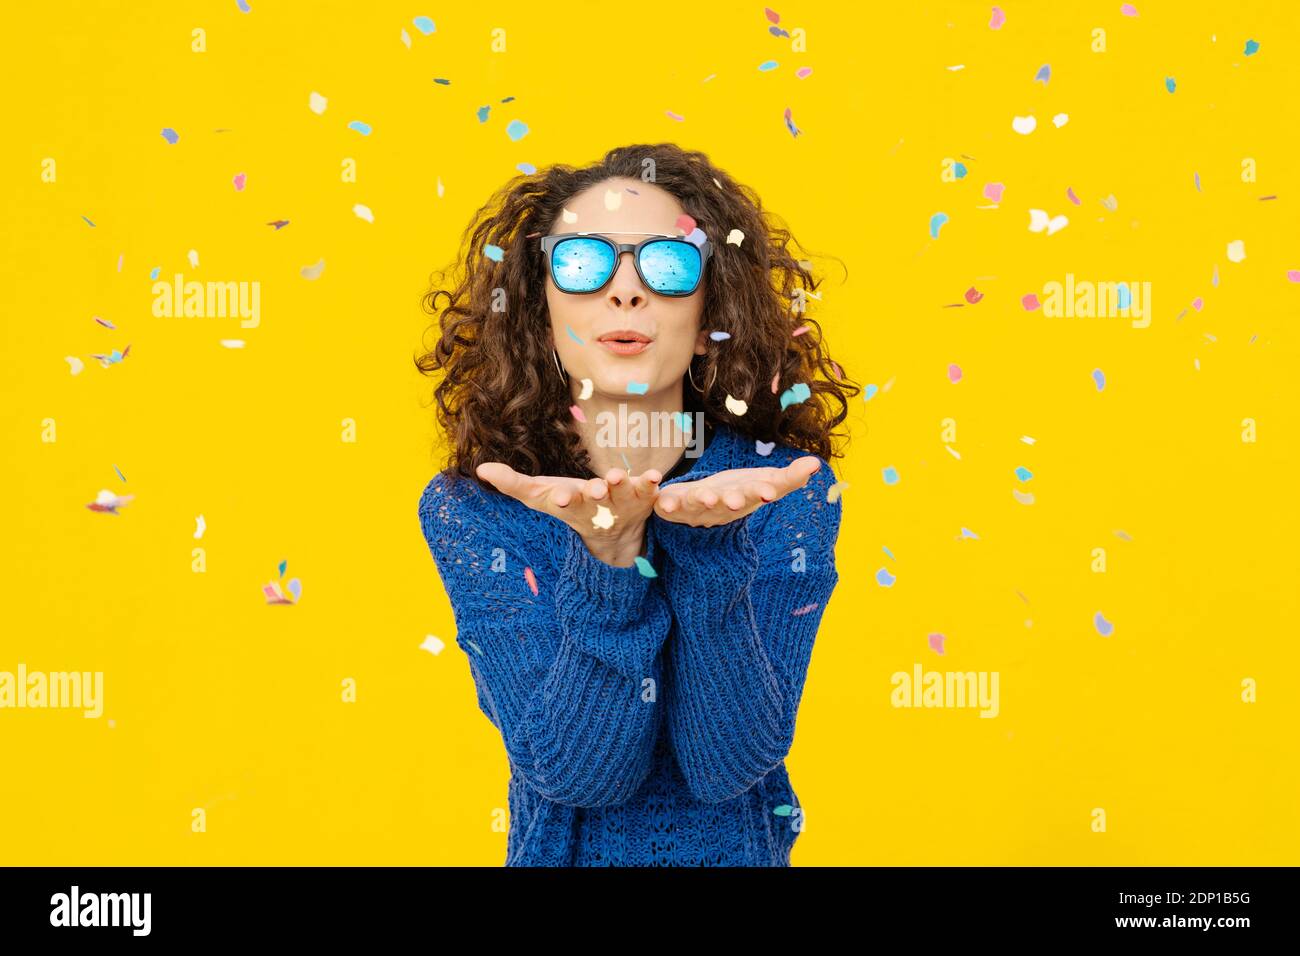 Retrato de una joven con gafas de sol espejadas que soplan confetti el aire frente al fondo amarillo Foto de stock